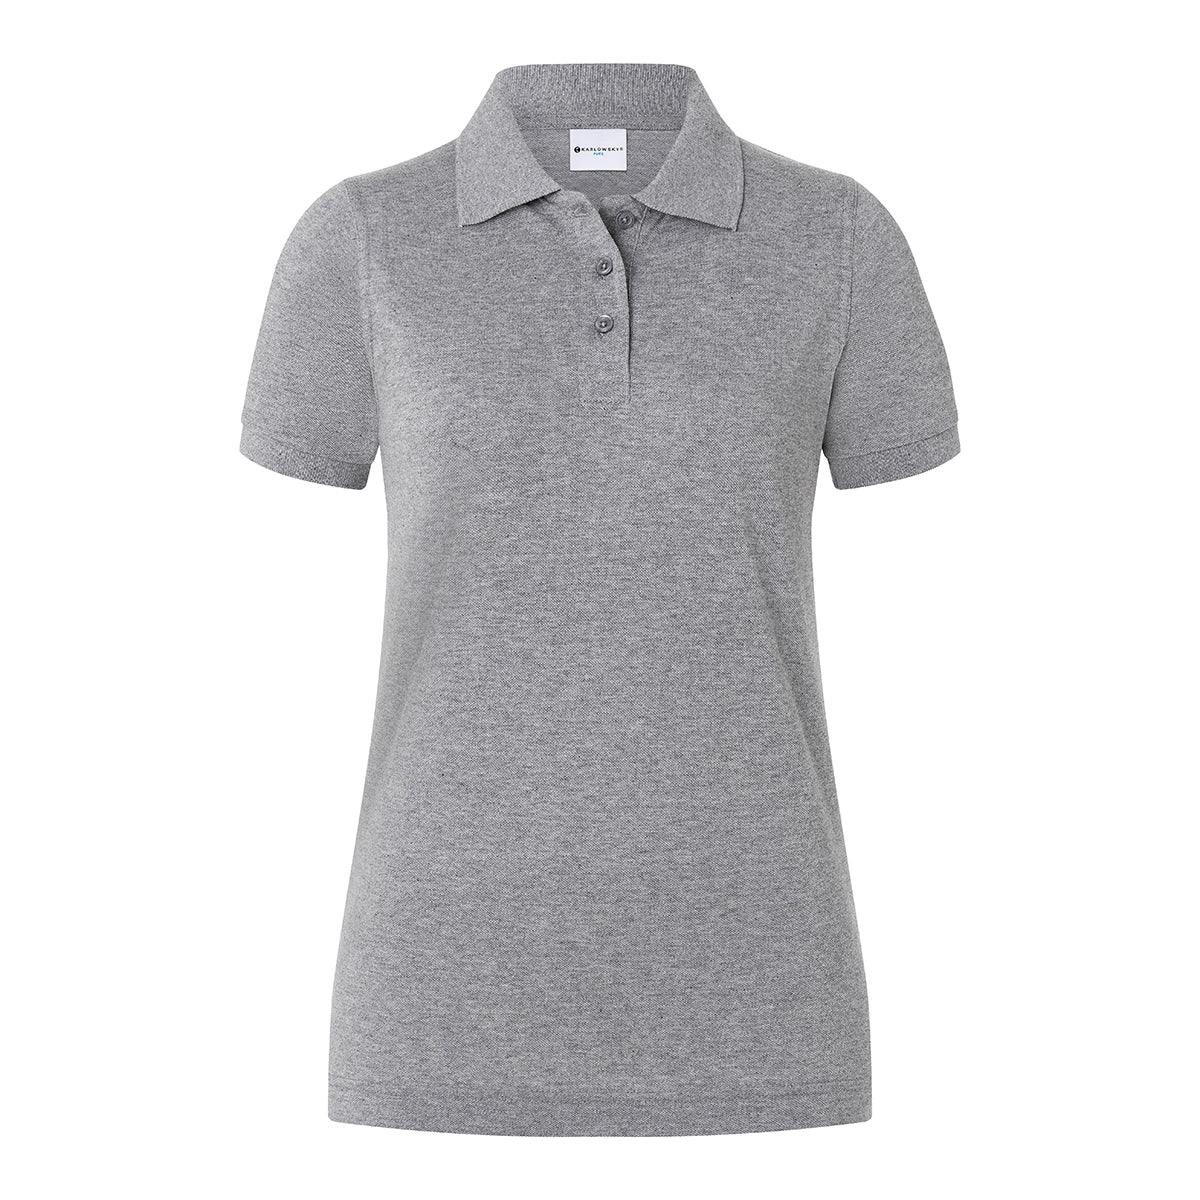 (6 stk) Karlowsky - Workwear Polo Shirt Basic til Damer - Lysegrå - Størrelse: M